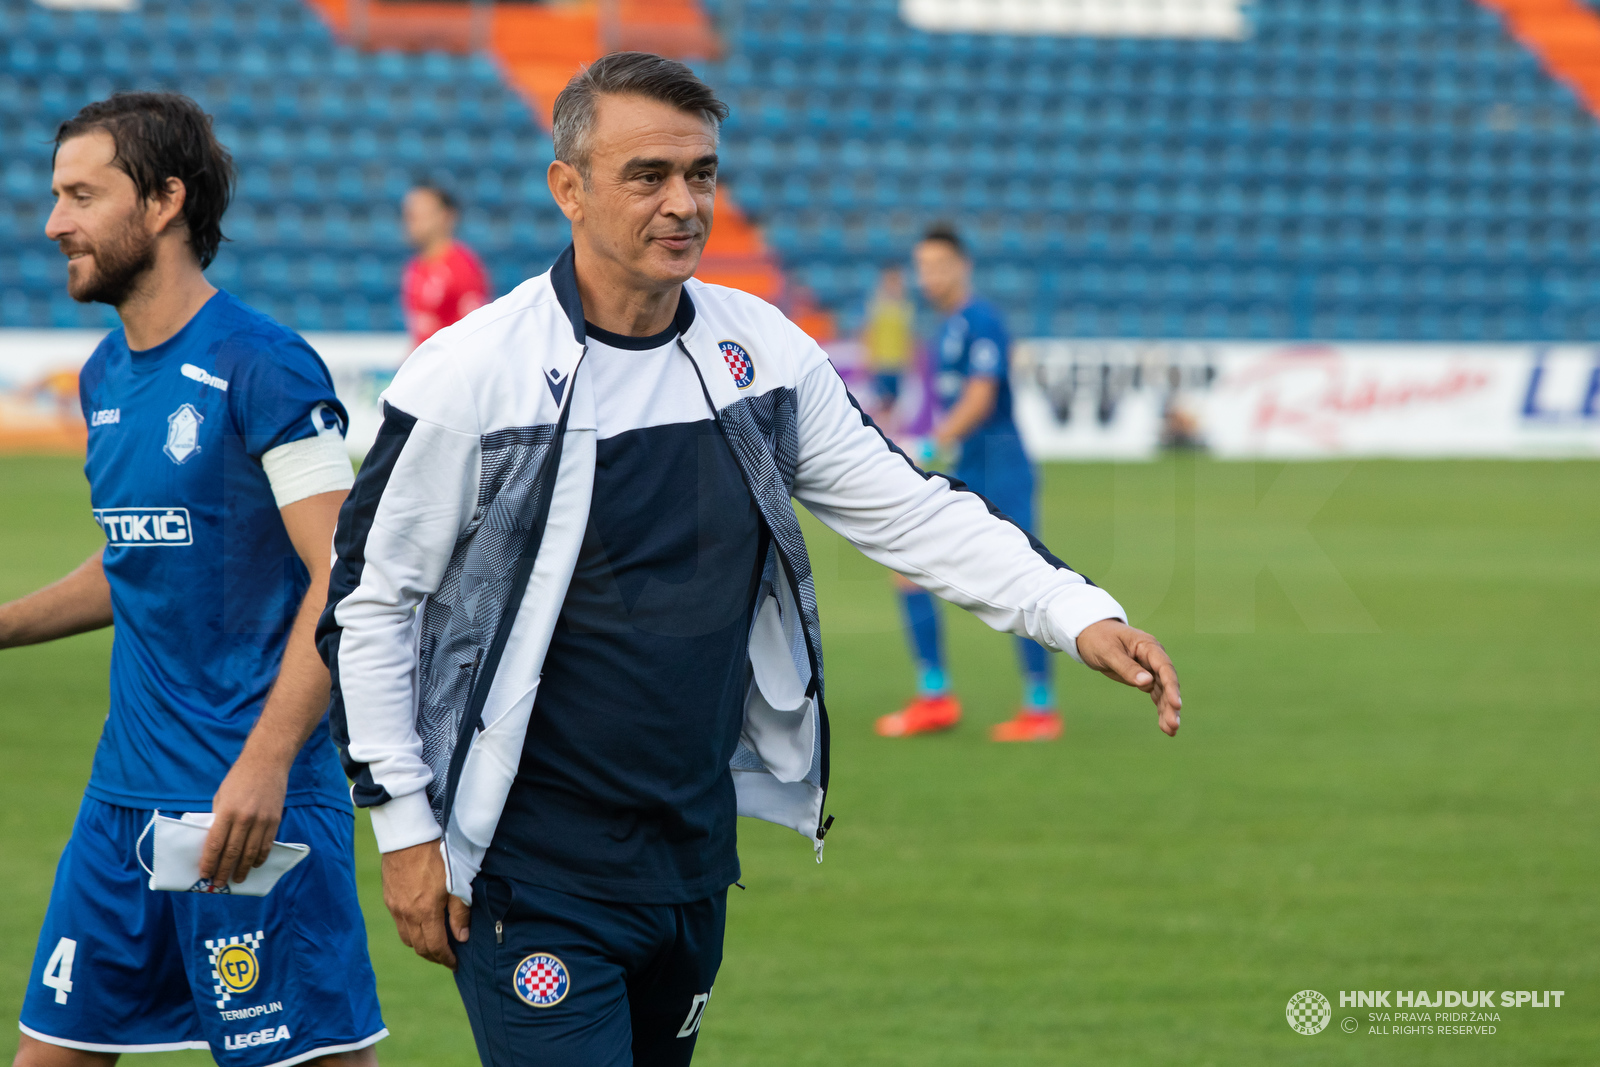 NK Varaždin 0-3 HNK Hajduk Split :: Resumenes :: Vídeos